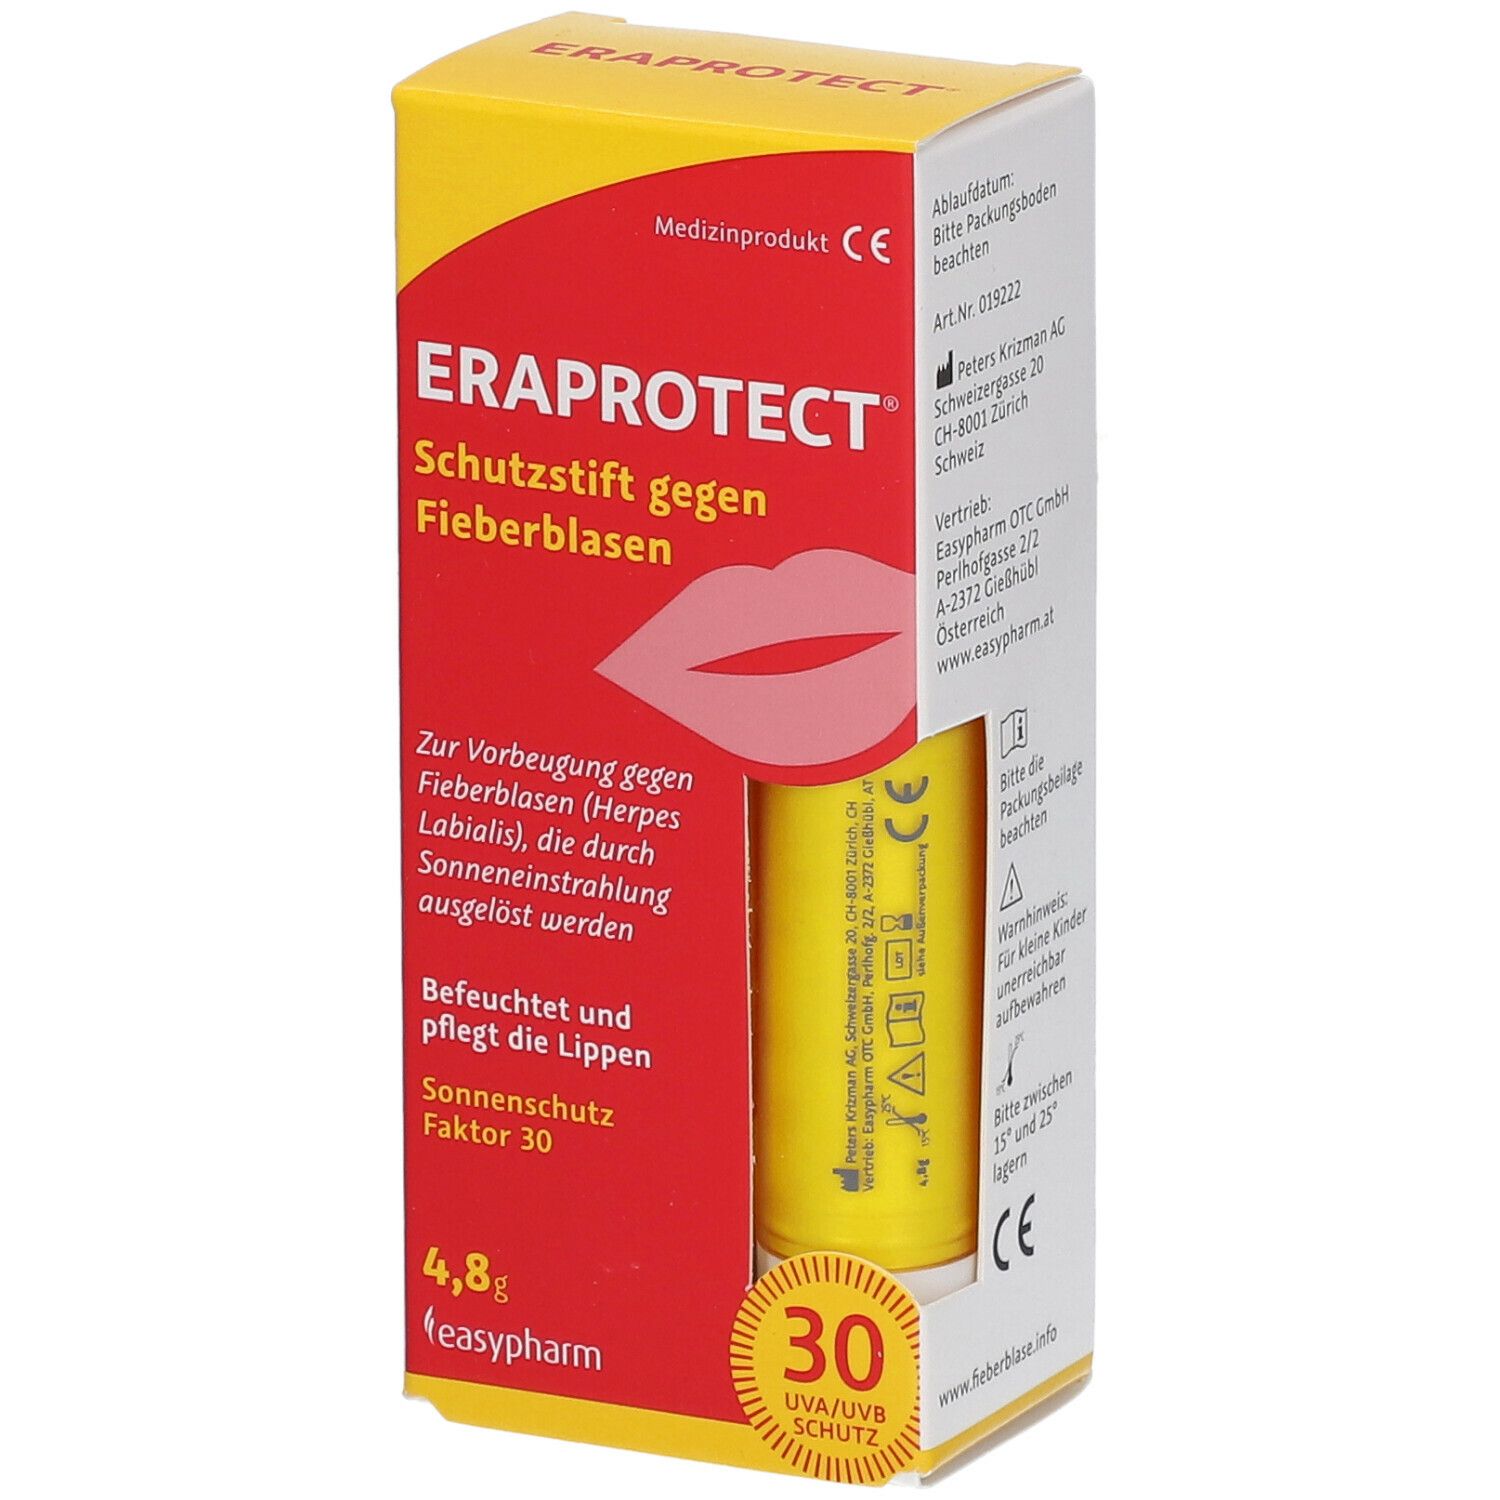 ERAPROTECT® Schutzstift gegen Fieberblasen SPF 30